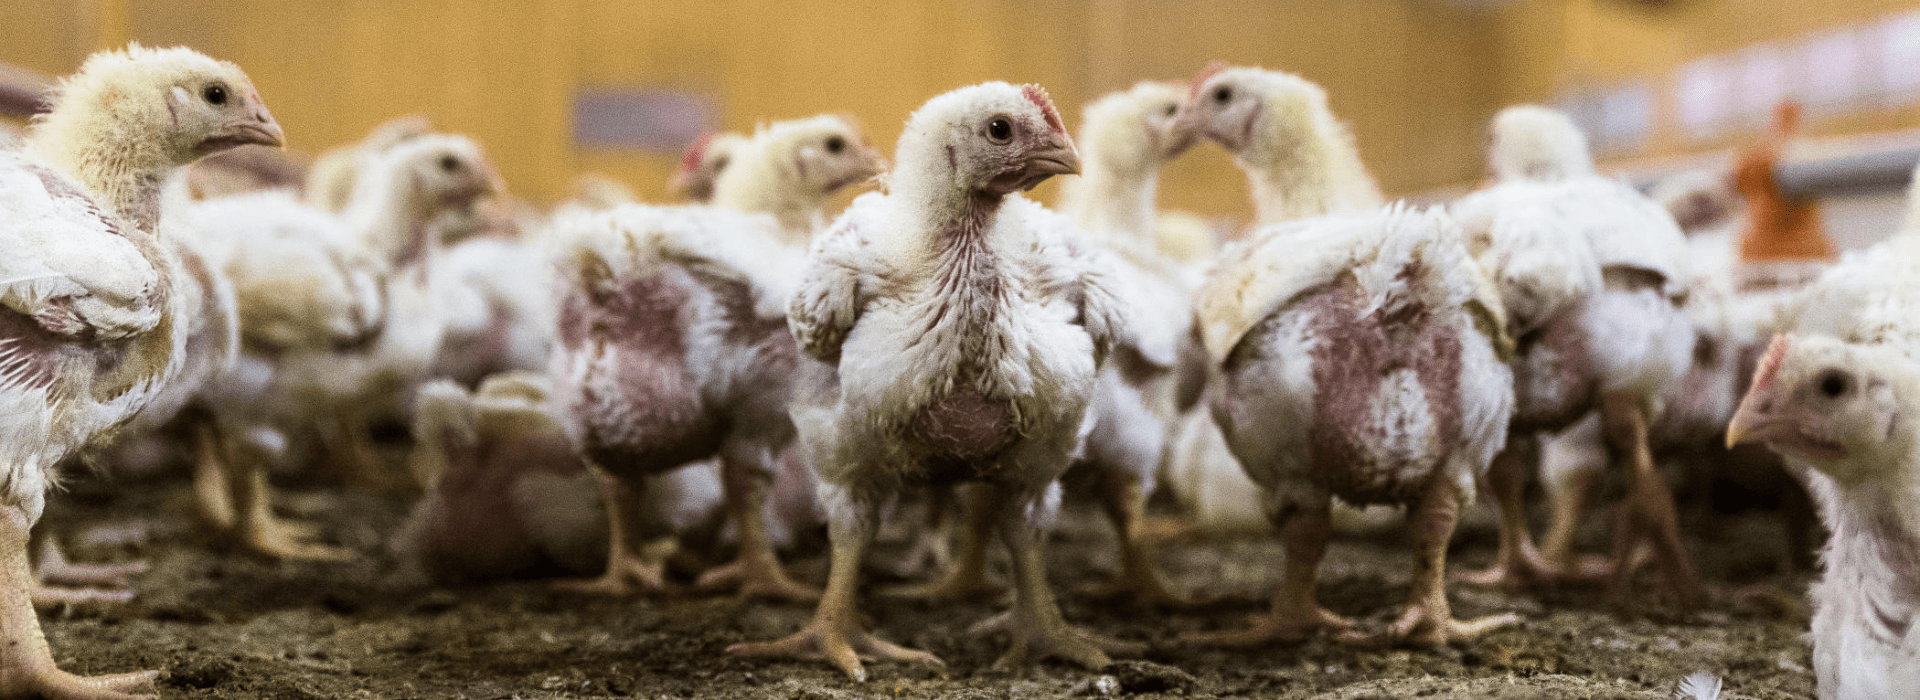 Hühner in der Massentierhaltung